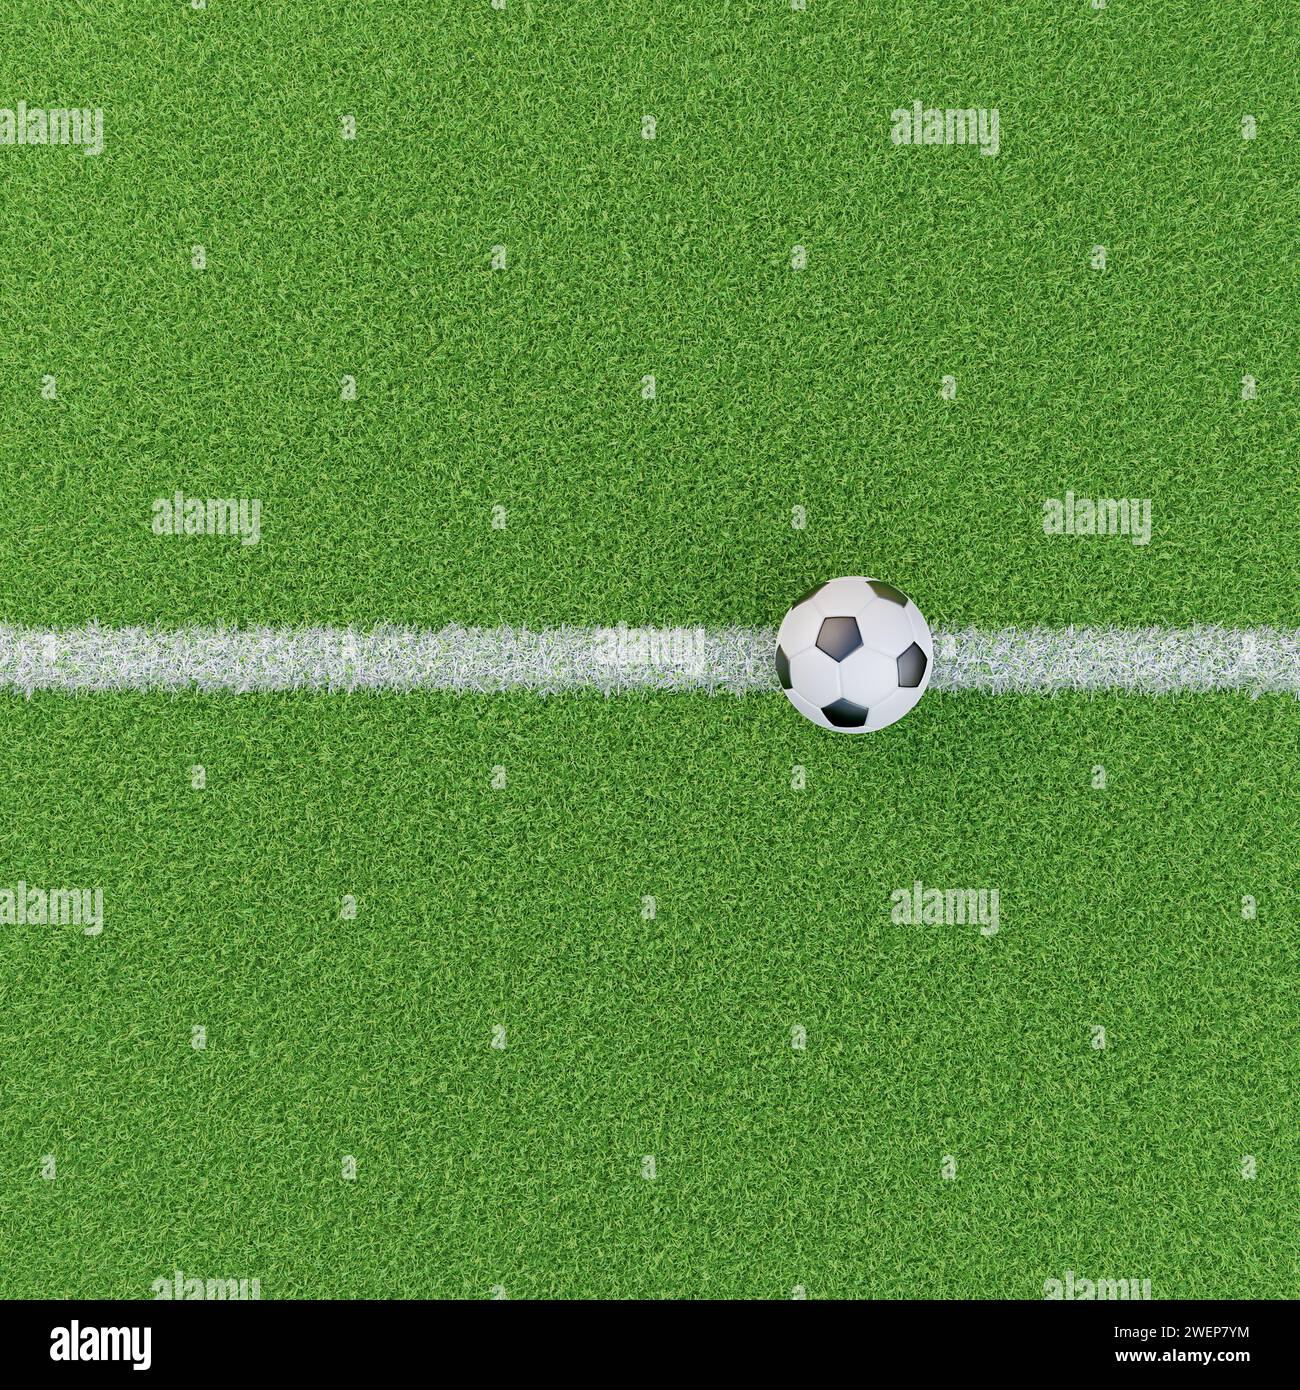 Gesso su un campo in erba con una palla da calcio. Immagine di base per compositi per immagini di sport calcistici. Vista ad alto angolo. Foto Stock